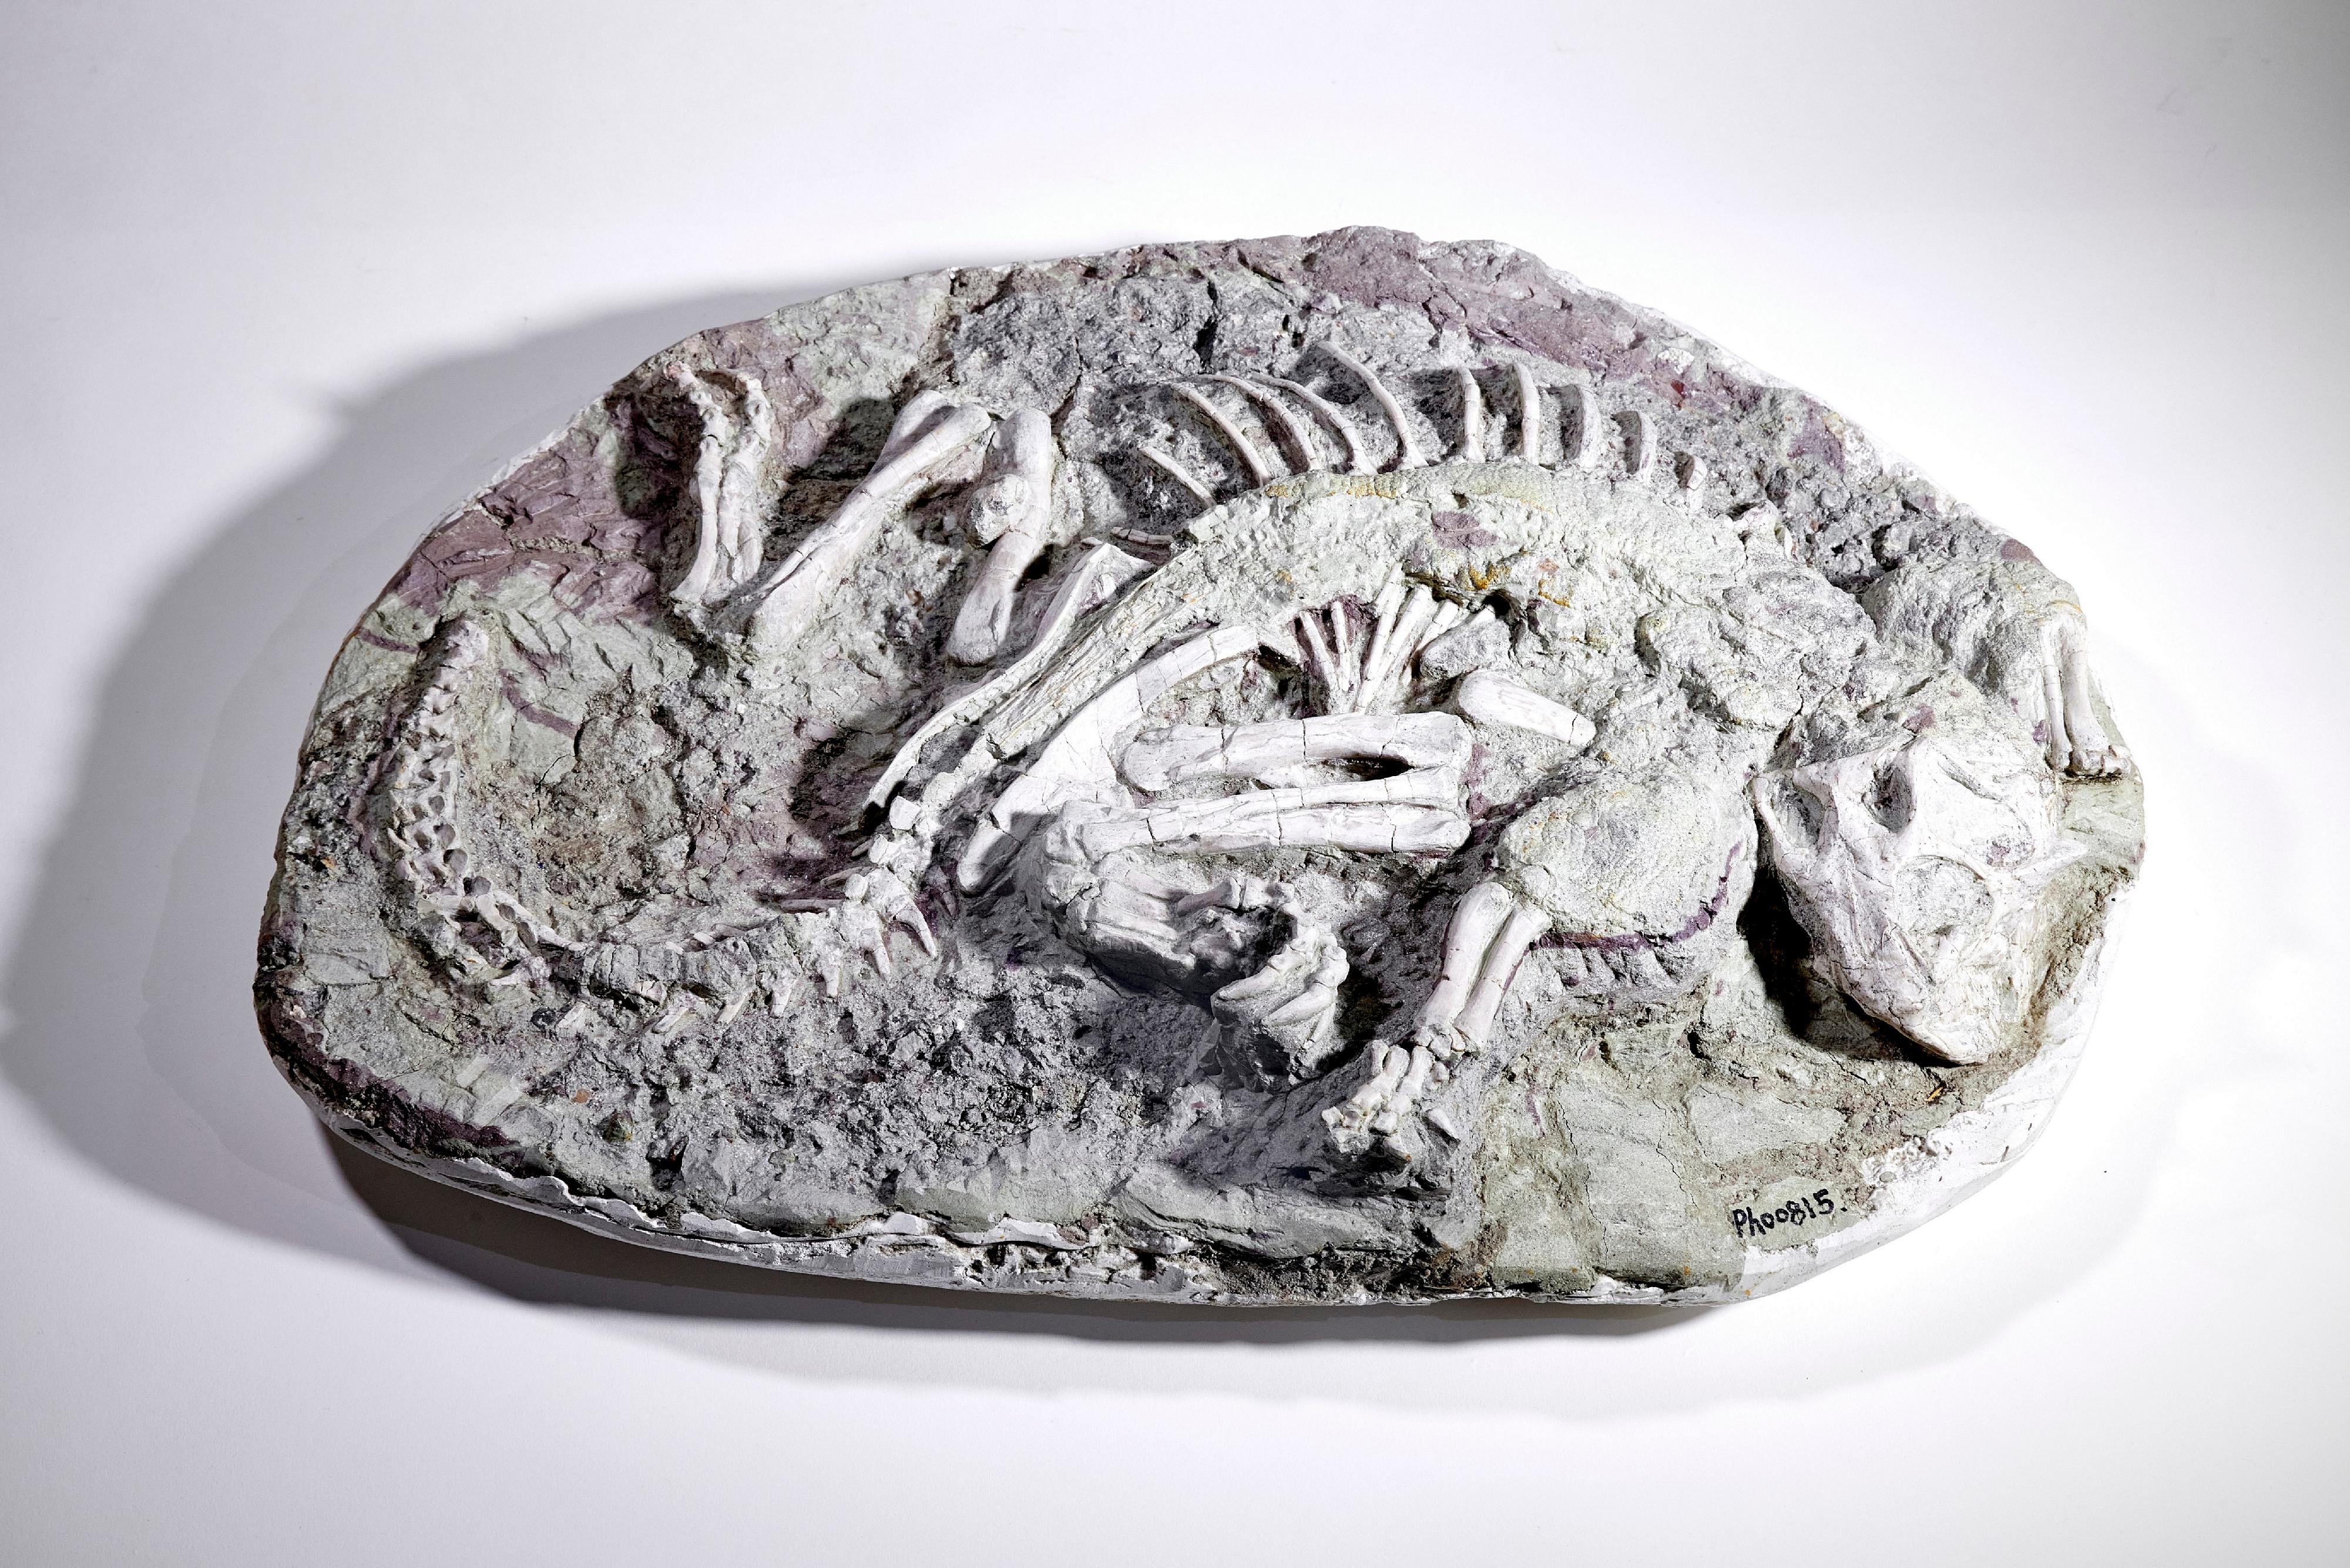 现正在香港科学馆古生物展厅举行的常设展览「灭绝．新生」将局部由四月六日（星期六）至四月底短暂关闭以更换展品。图示即将归还予国家自然博物馆的鹦鹉嘴龙木乃伊化石。